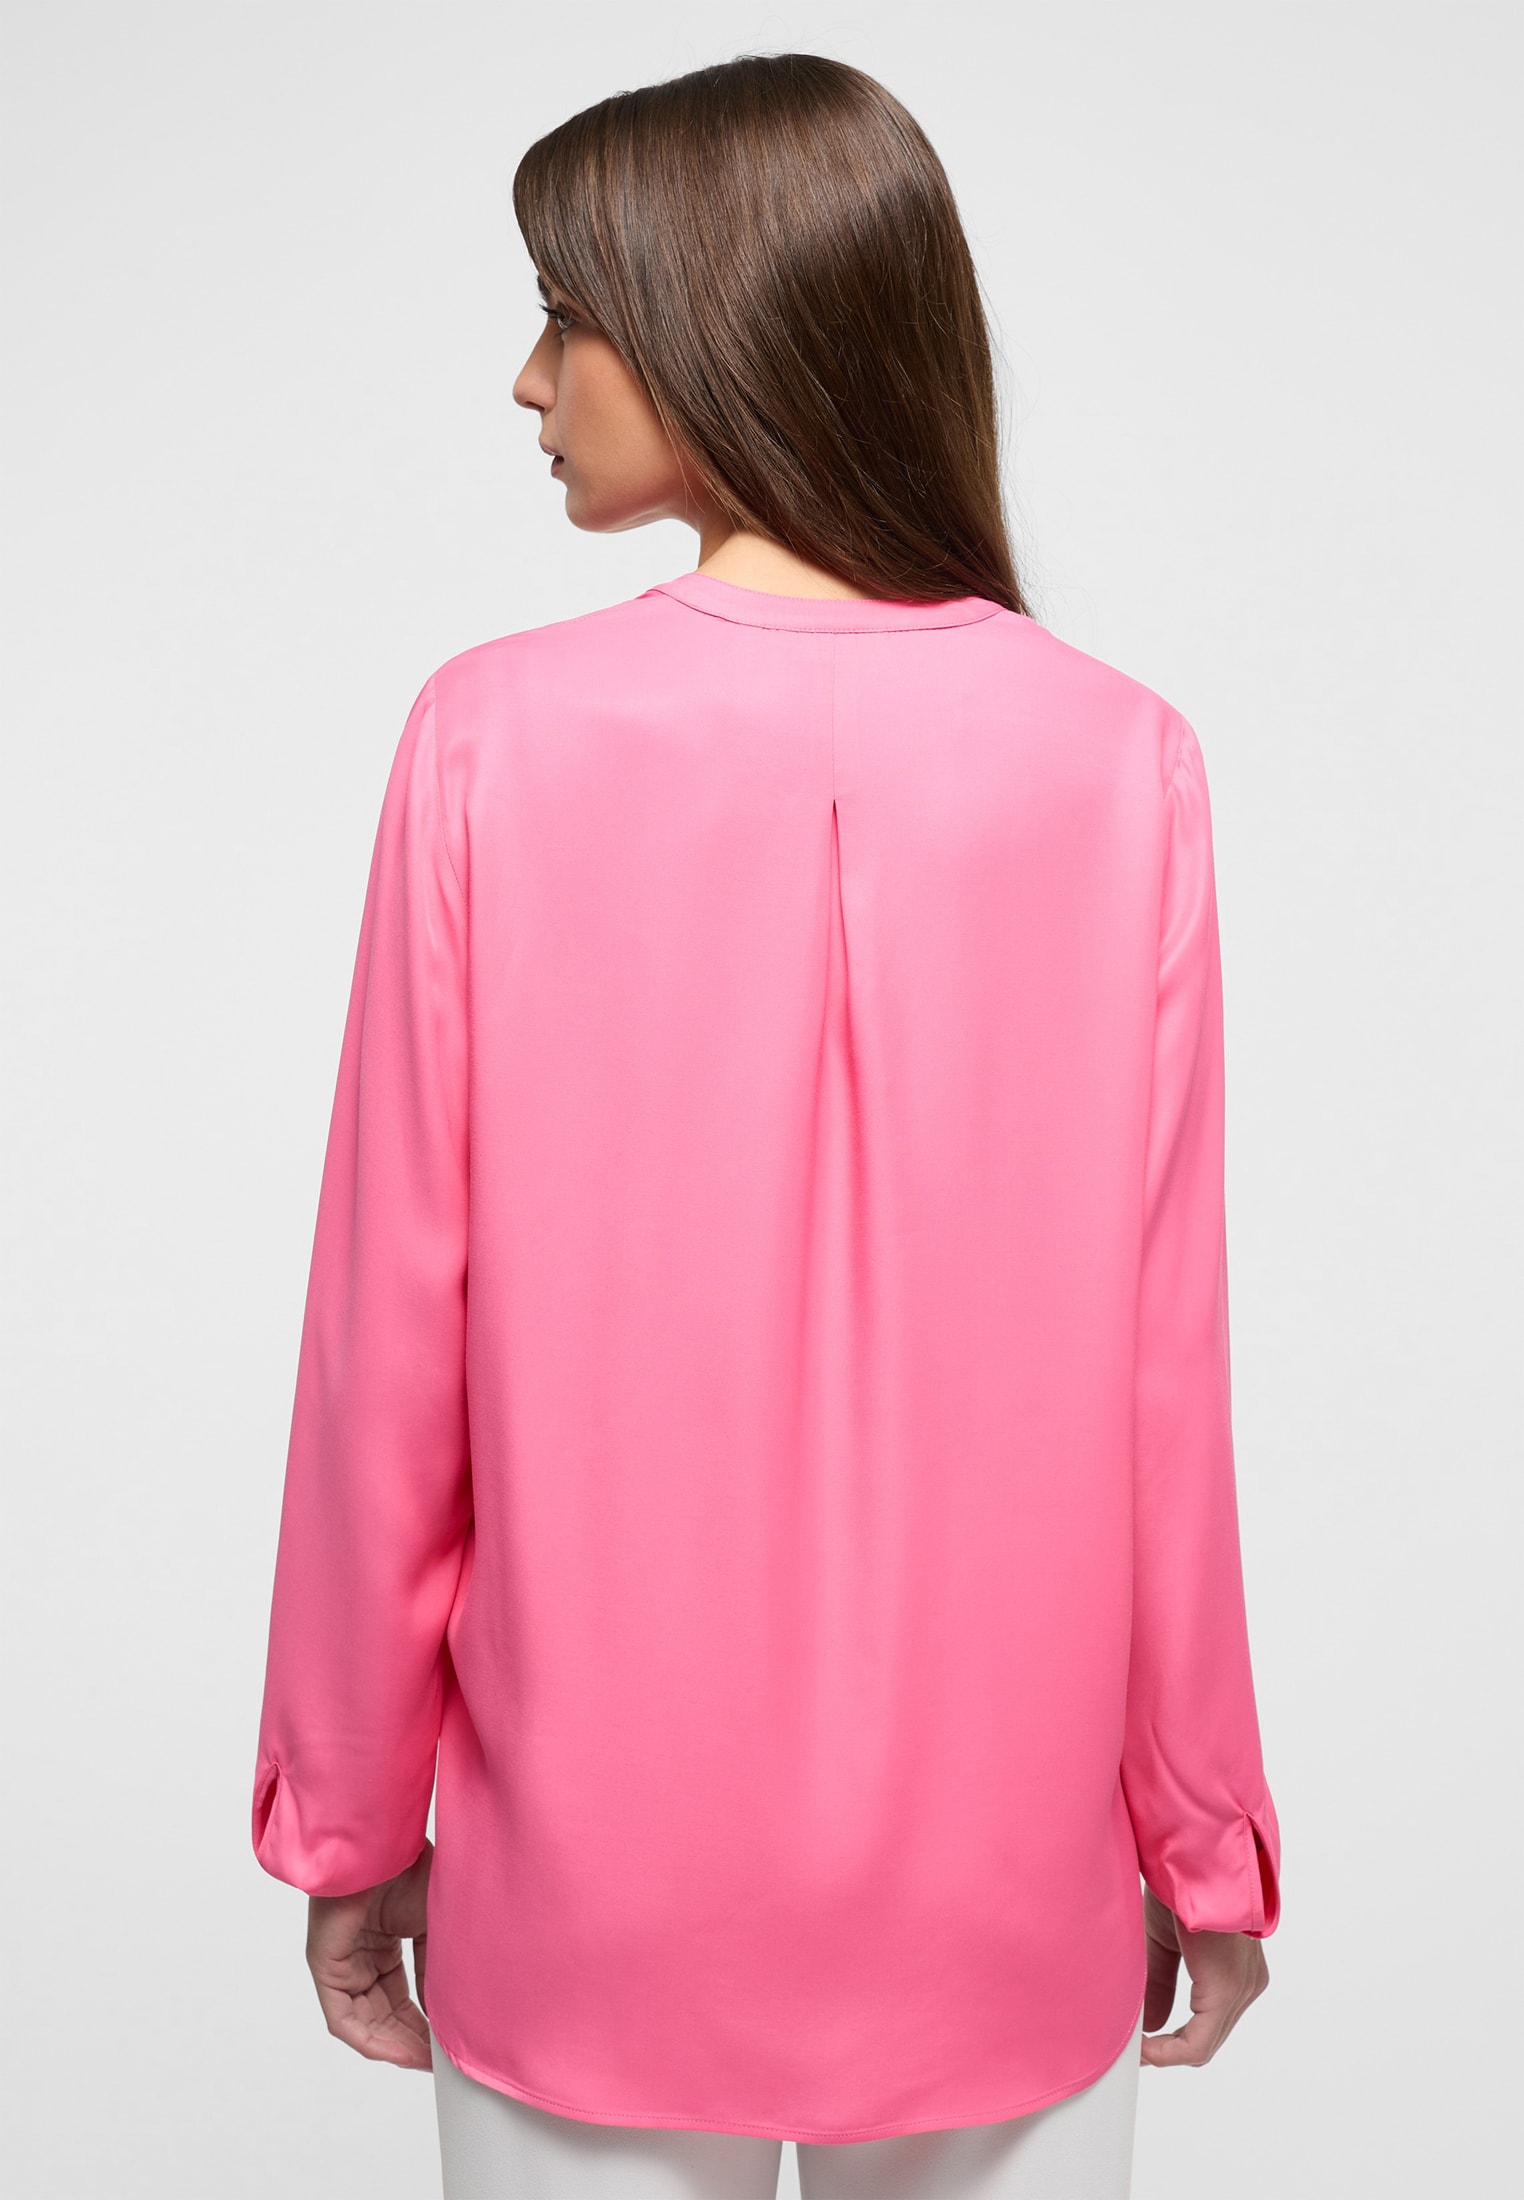 in 42 | Viscose | pink Shirt Langarm 2BL04272-15-21-42-1/1 Bluse pink | | unifarben